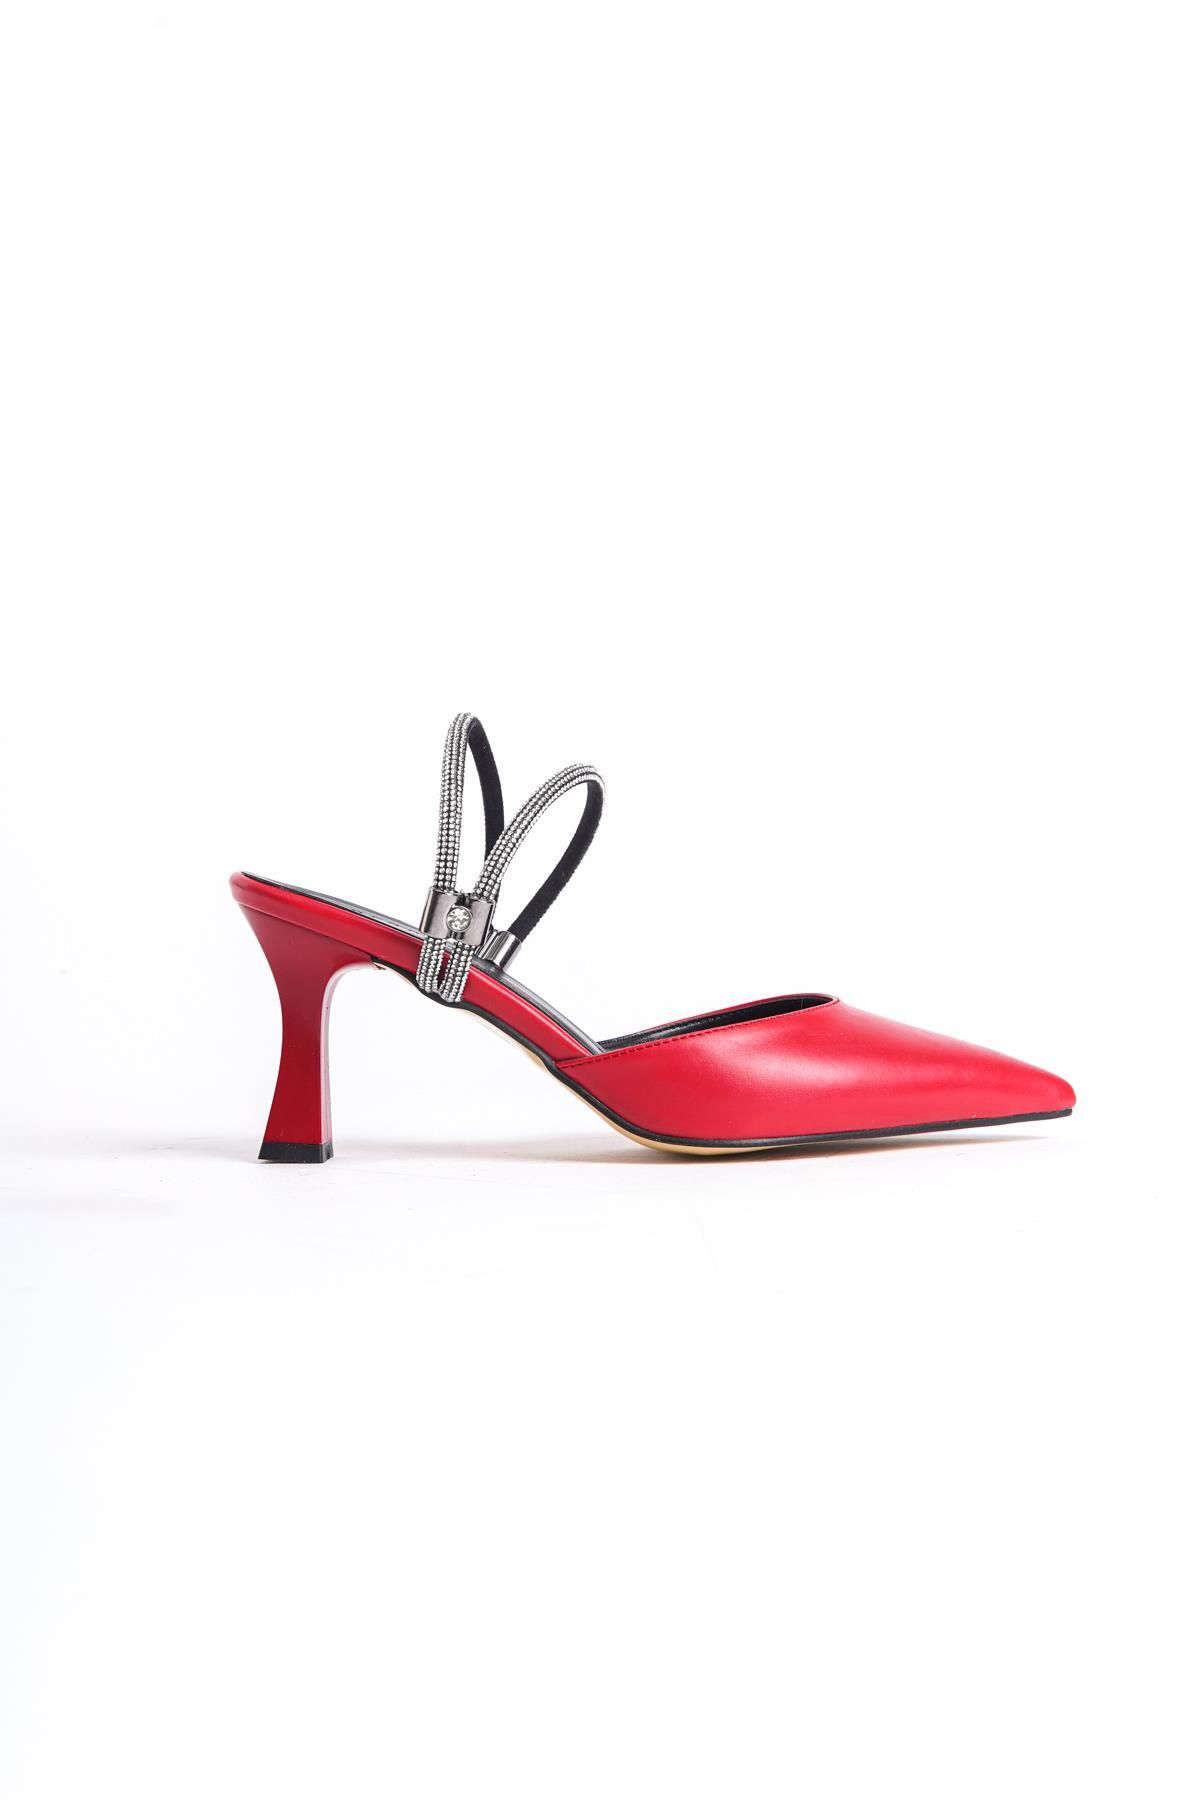 bescobel Kadın Lenmi Kırmızı Cilt Sivri Burun Taşlı Terlik & Ayakkabı 6 cm topuk 101